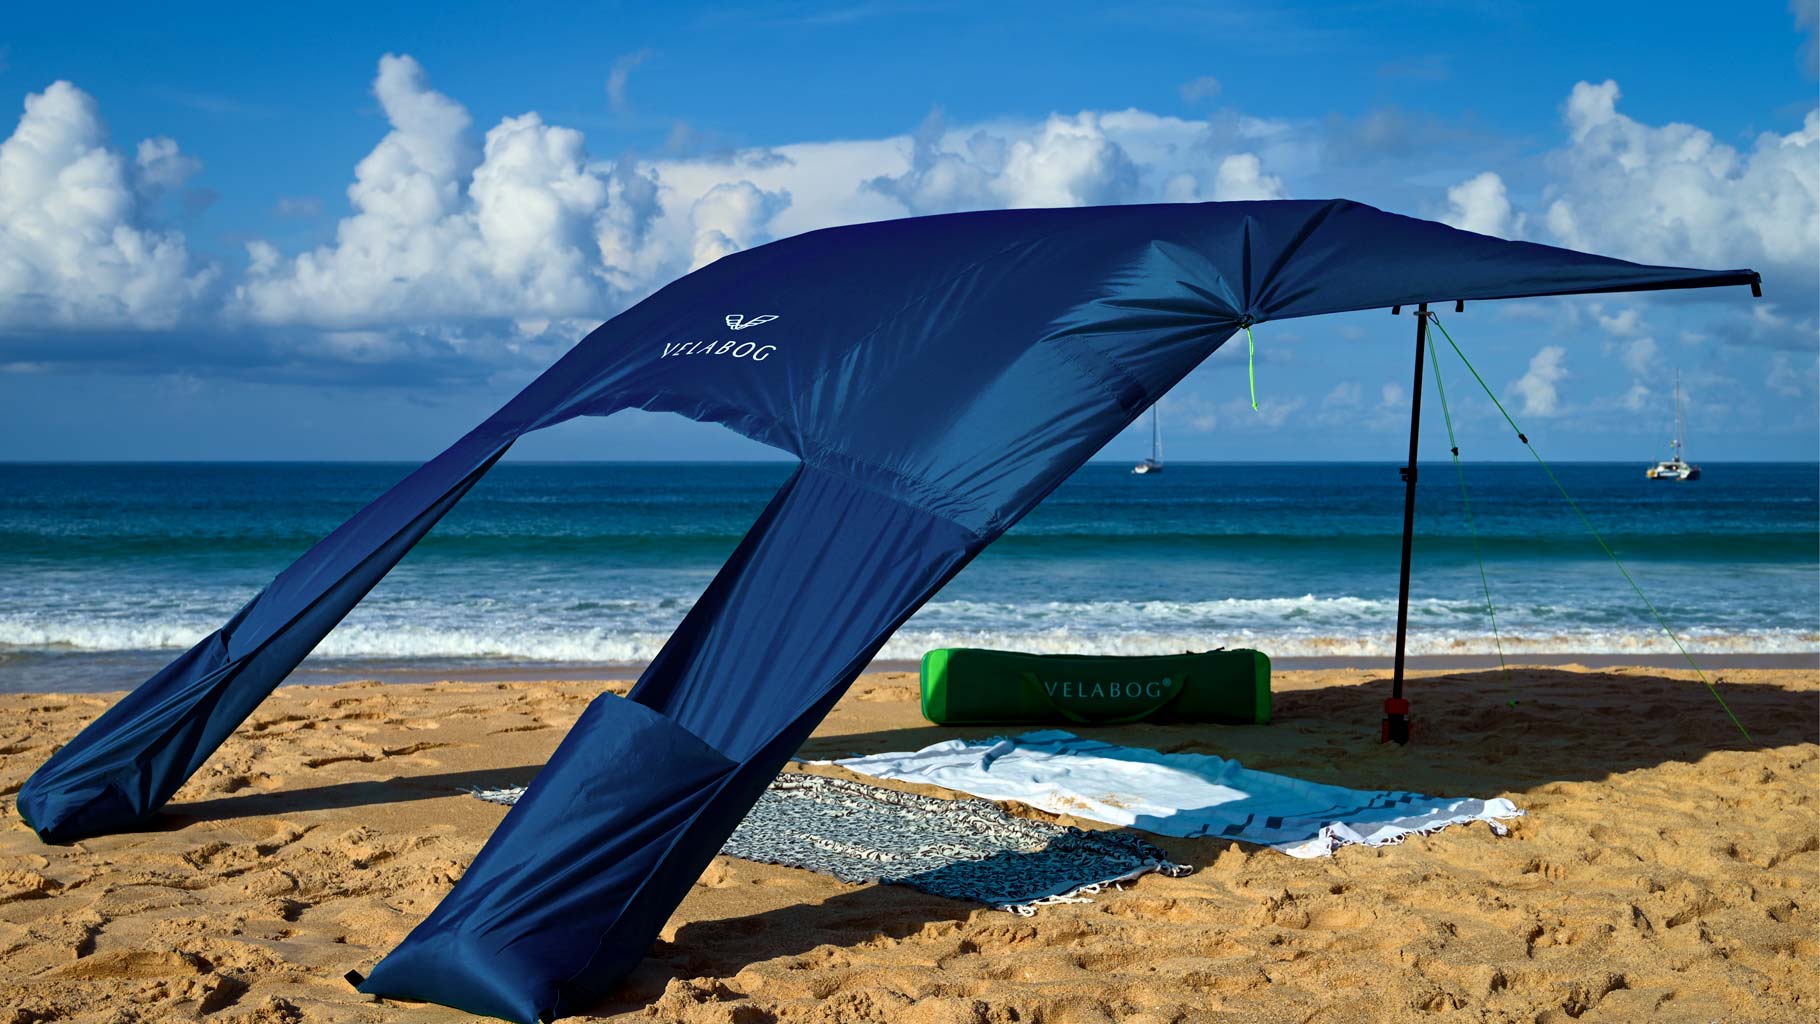 Toldo playa Velabog Breeze, azul nocturno, en una playa con mucho viento. Toldo playa, sombrilla y refugio de playa en uno. Muy grande y a la vez compacto. Vista inclinada desde atrás.